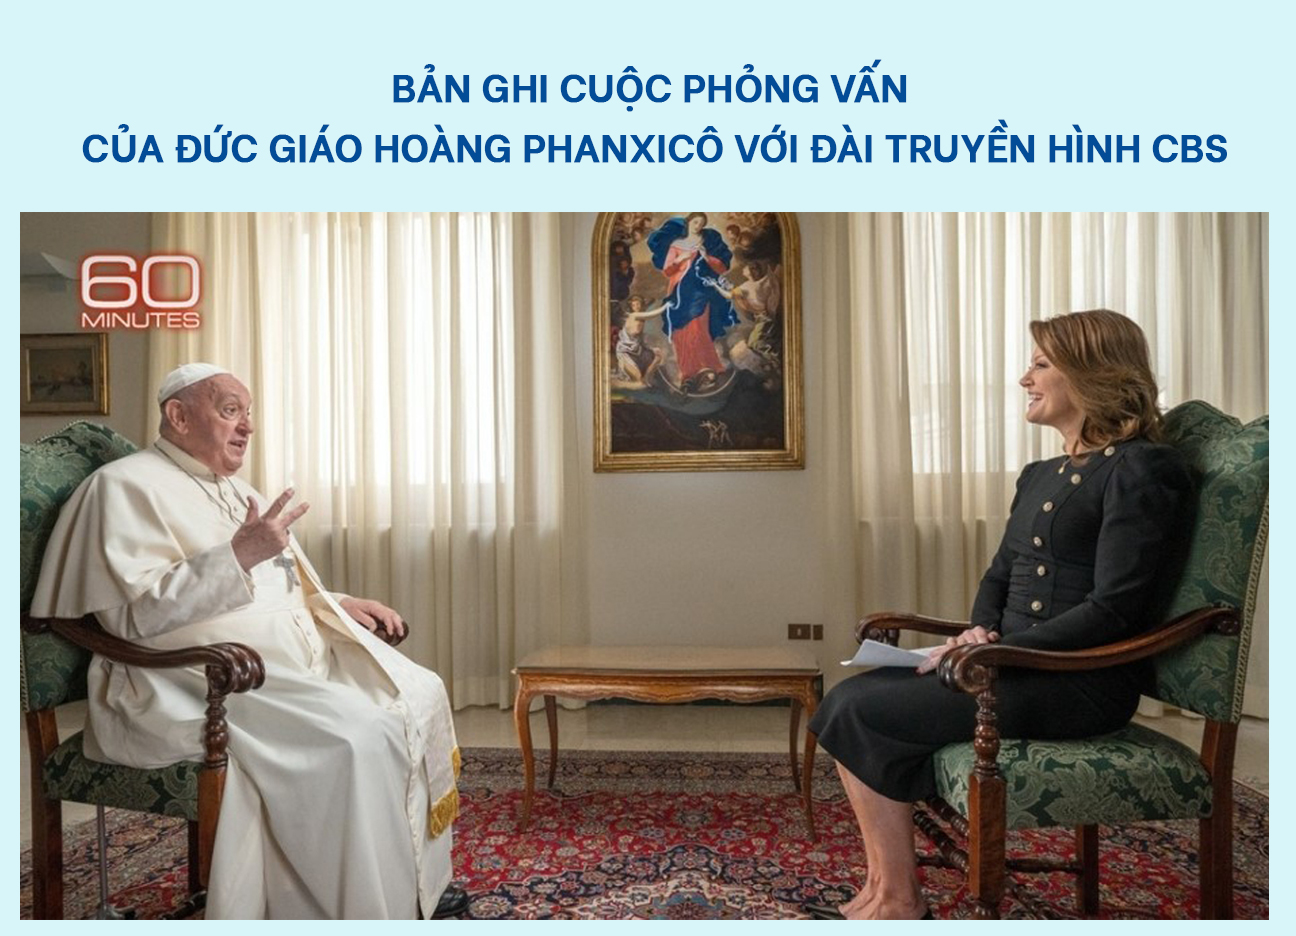 Bản ghi cuộc phỏng vấn với đài truyền hình CBS của Đức giáo hoàng Phanxicô